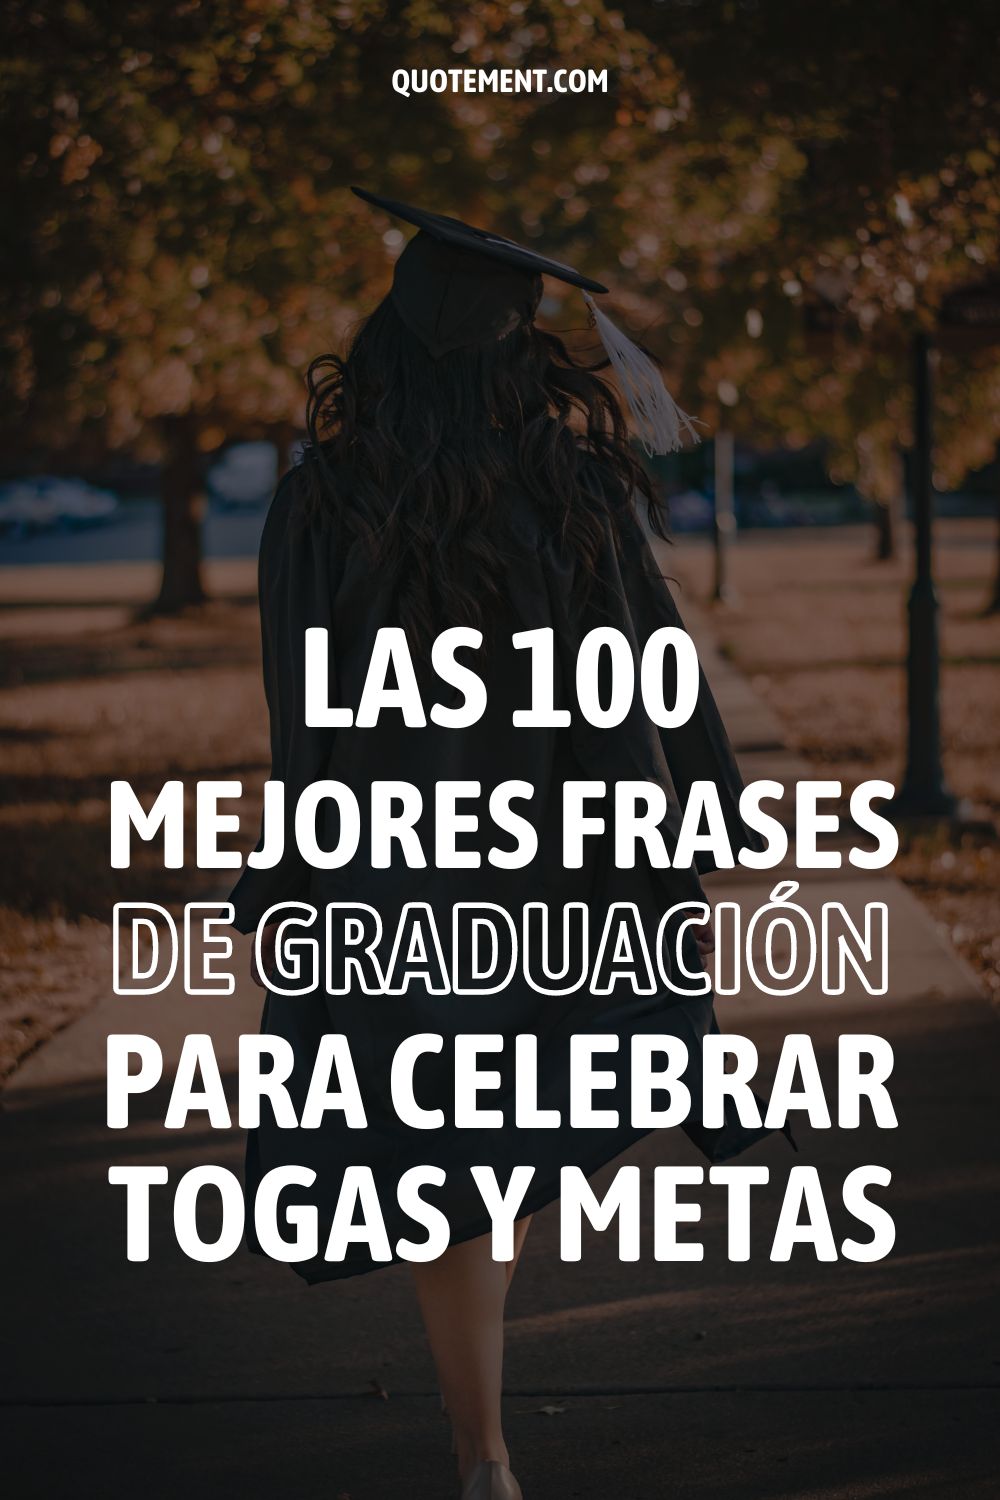 Las 100 mejores frases de graduación para celebrar togas y metas